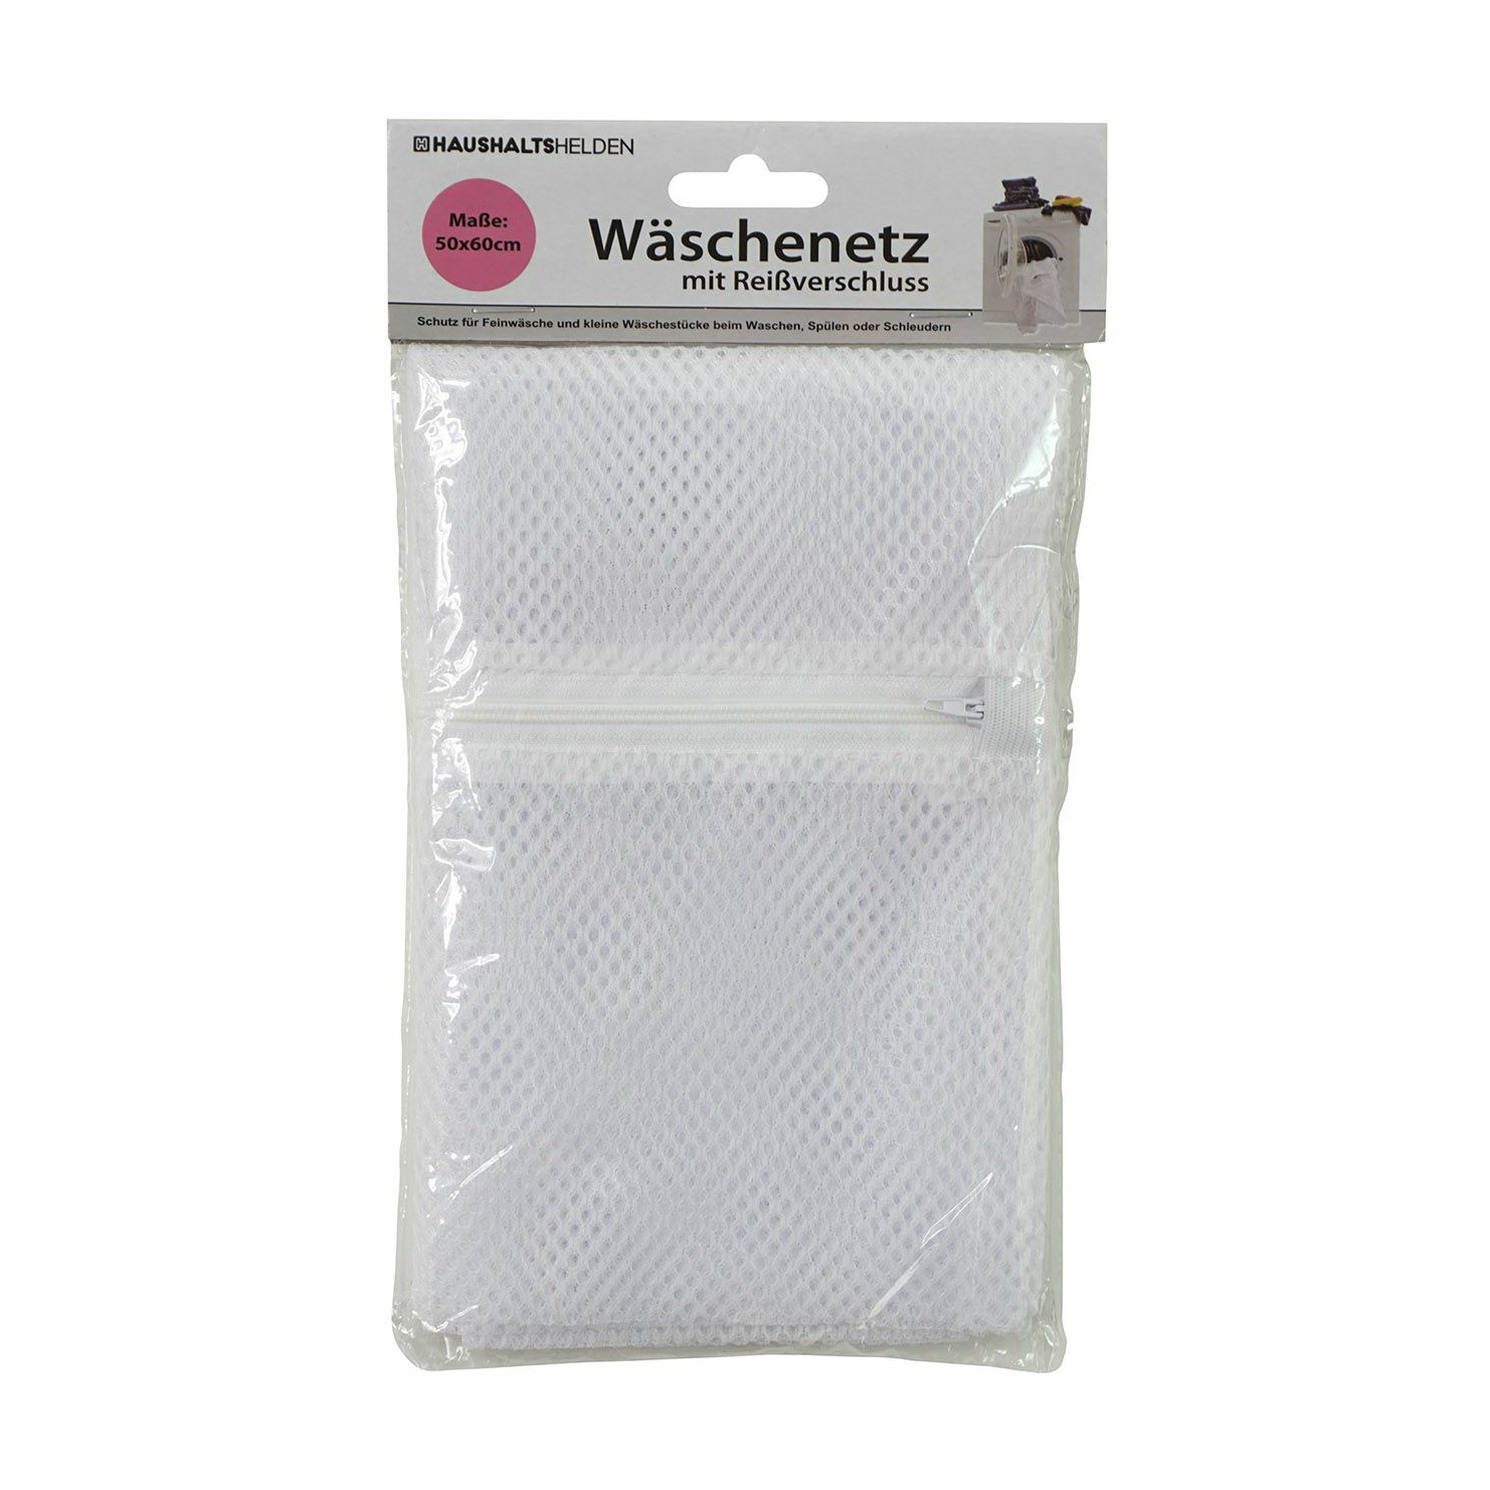 Haushaltshelden Waszak voor kwetsbare kleding wasgoed/waszak - wit - large size - 50 x 60 cm -